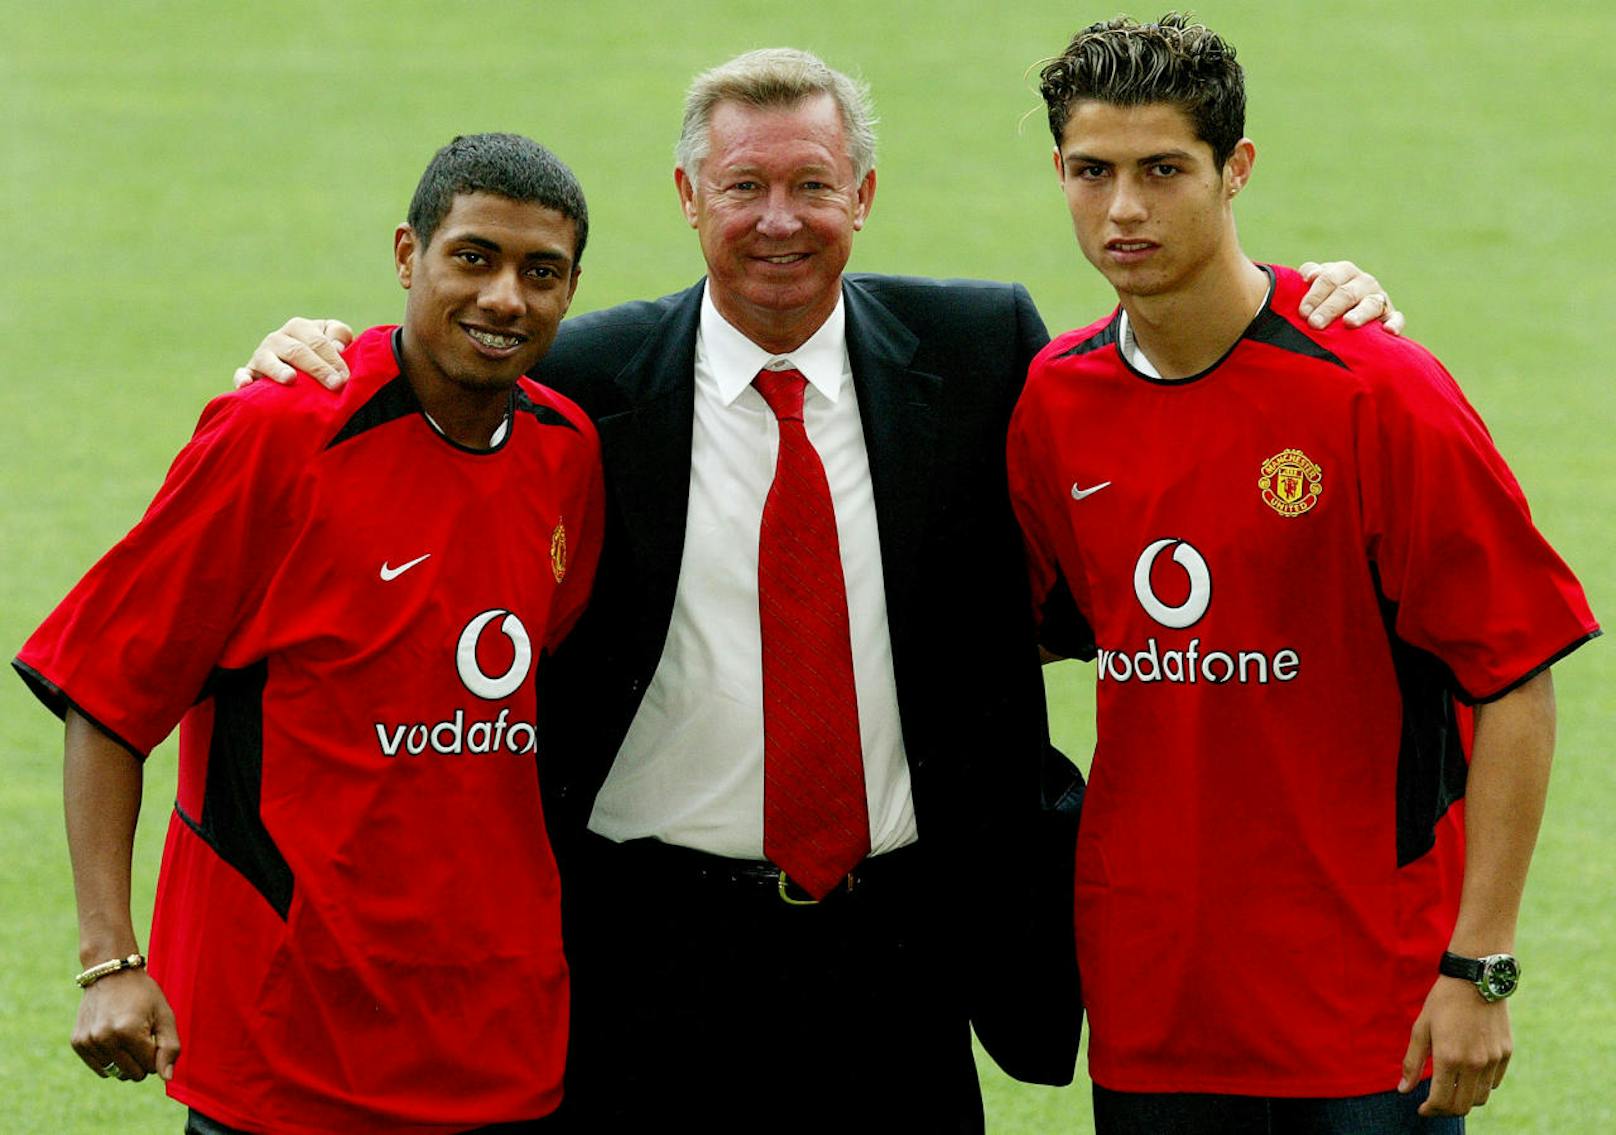 Sir Alex Ferguson war auf der Stelle vom Talent Ronaldos überzeugt und lotste ihn 2003 für 19 Millionen Euro zu Manchester United. Damals war Cristiano erst 18 Jahre alt. Die ersten 3 Jahre im Trikot von United waren nicht leicht für den Portugiesen, der mit der robusten Spielweise in der Premier League zunächst so seine Probleme hatte.